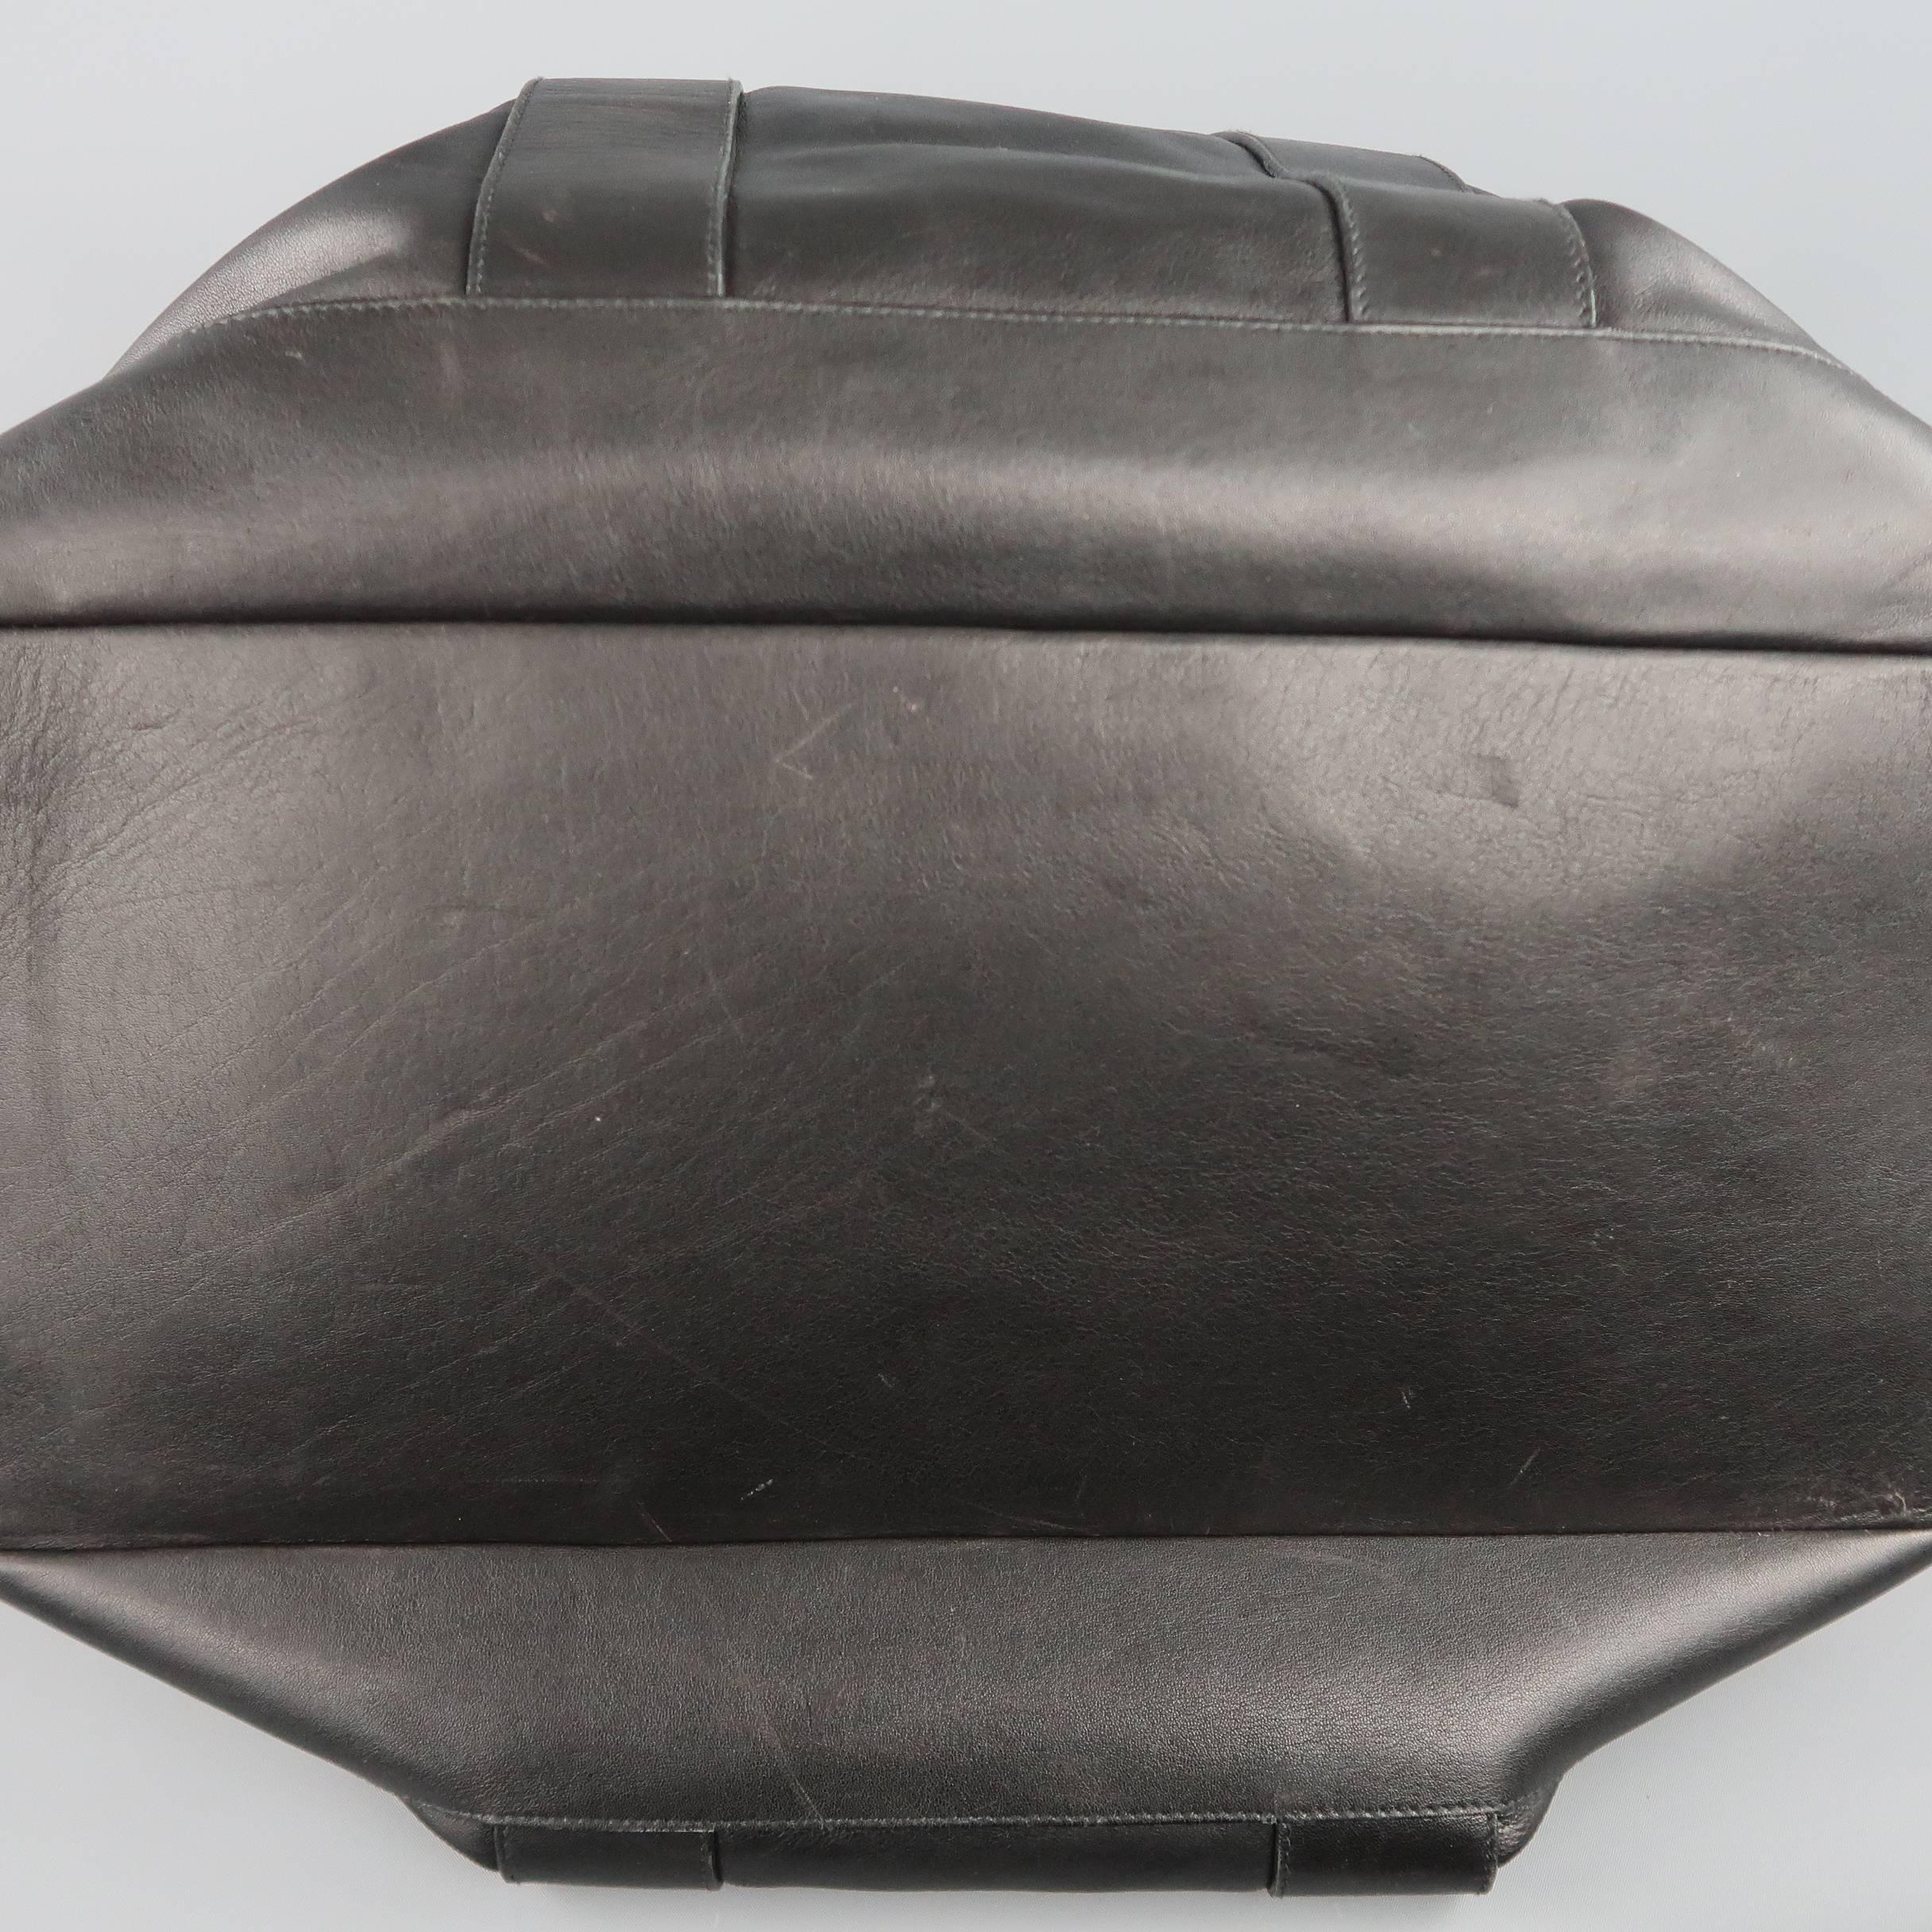 JIL SANDER Black Leather Expandable Weekender Travel Bag 1